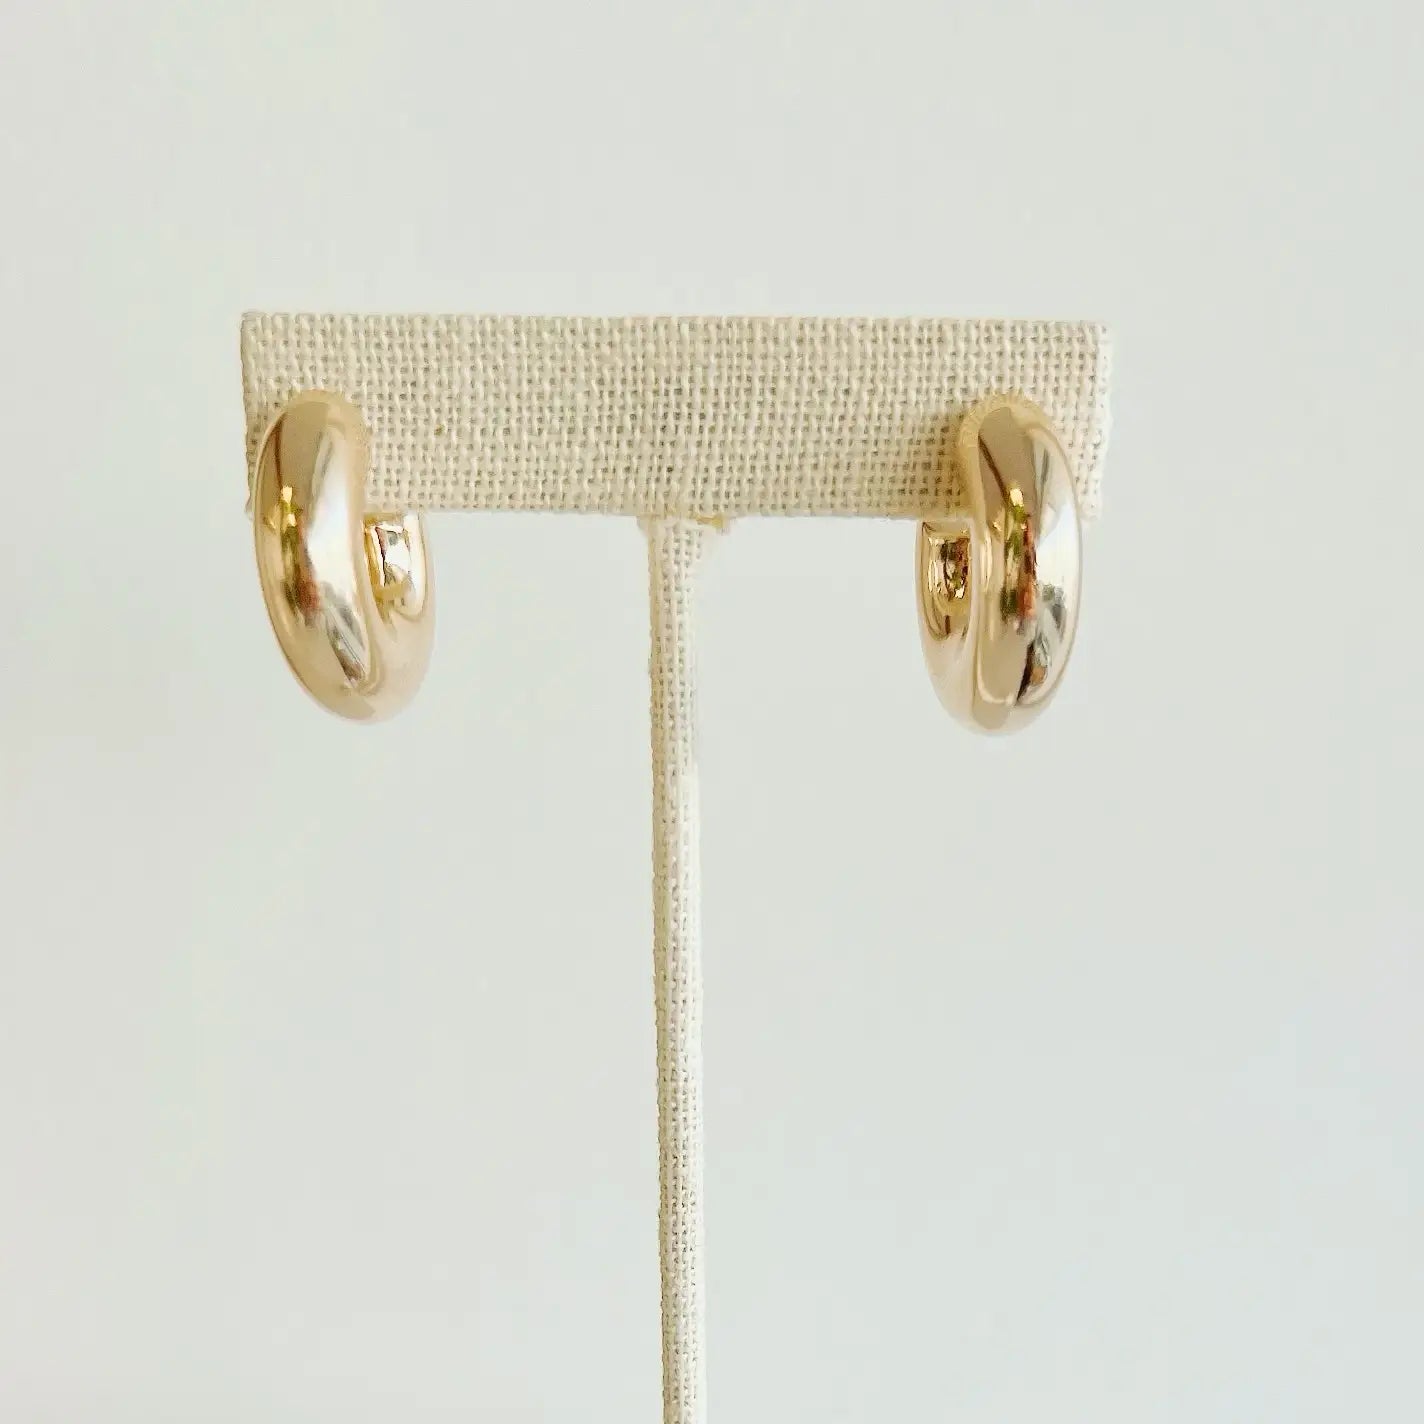 Ellie Chunky Tube Hoops Earrings Gold Filled - True by Kristy Jewelry